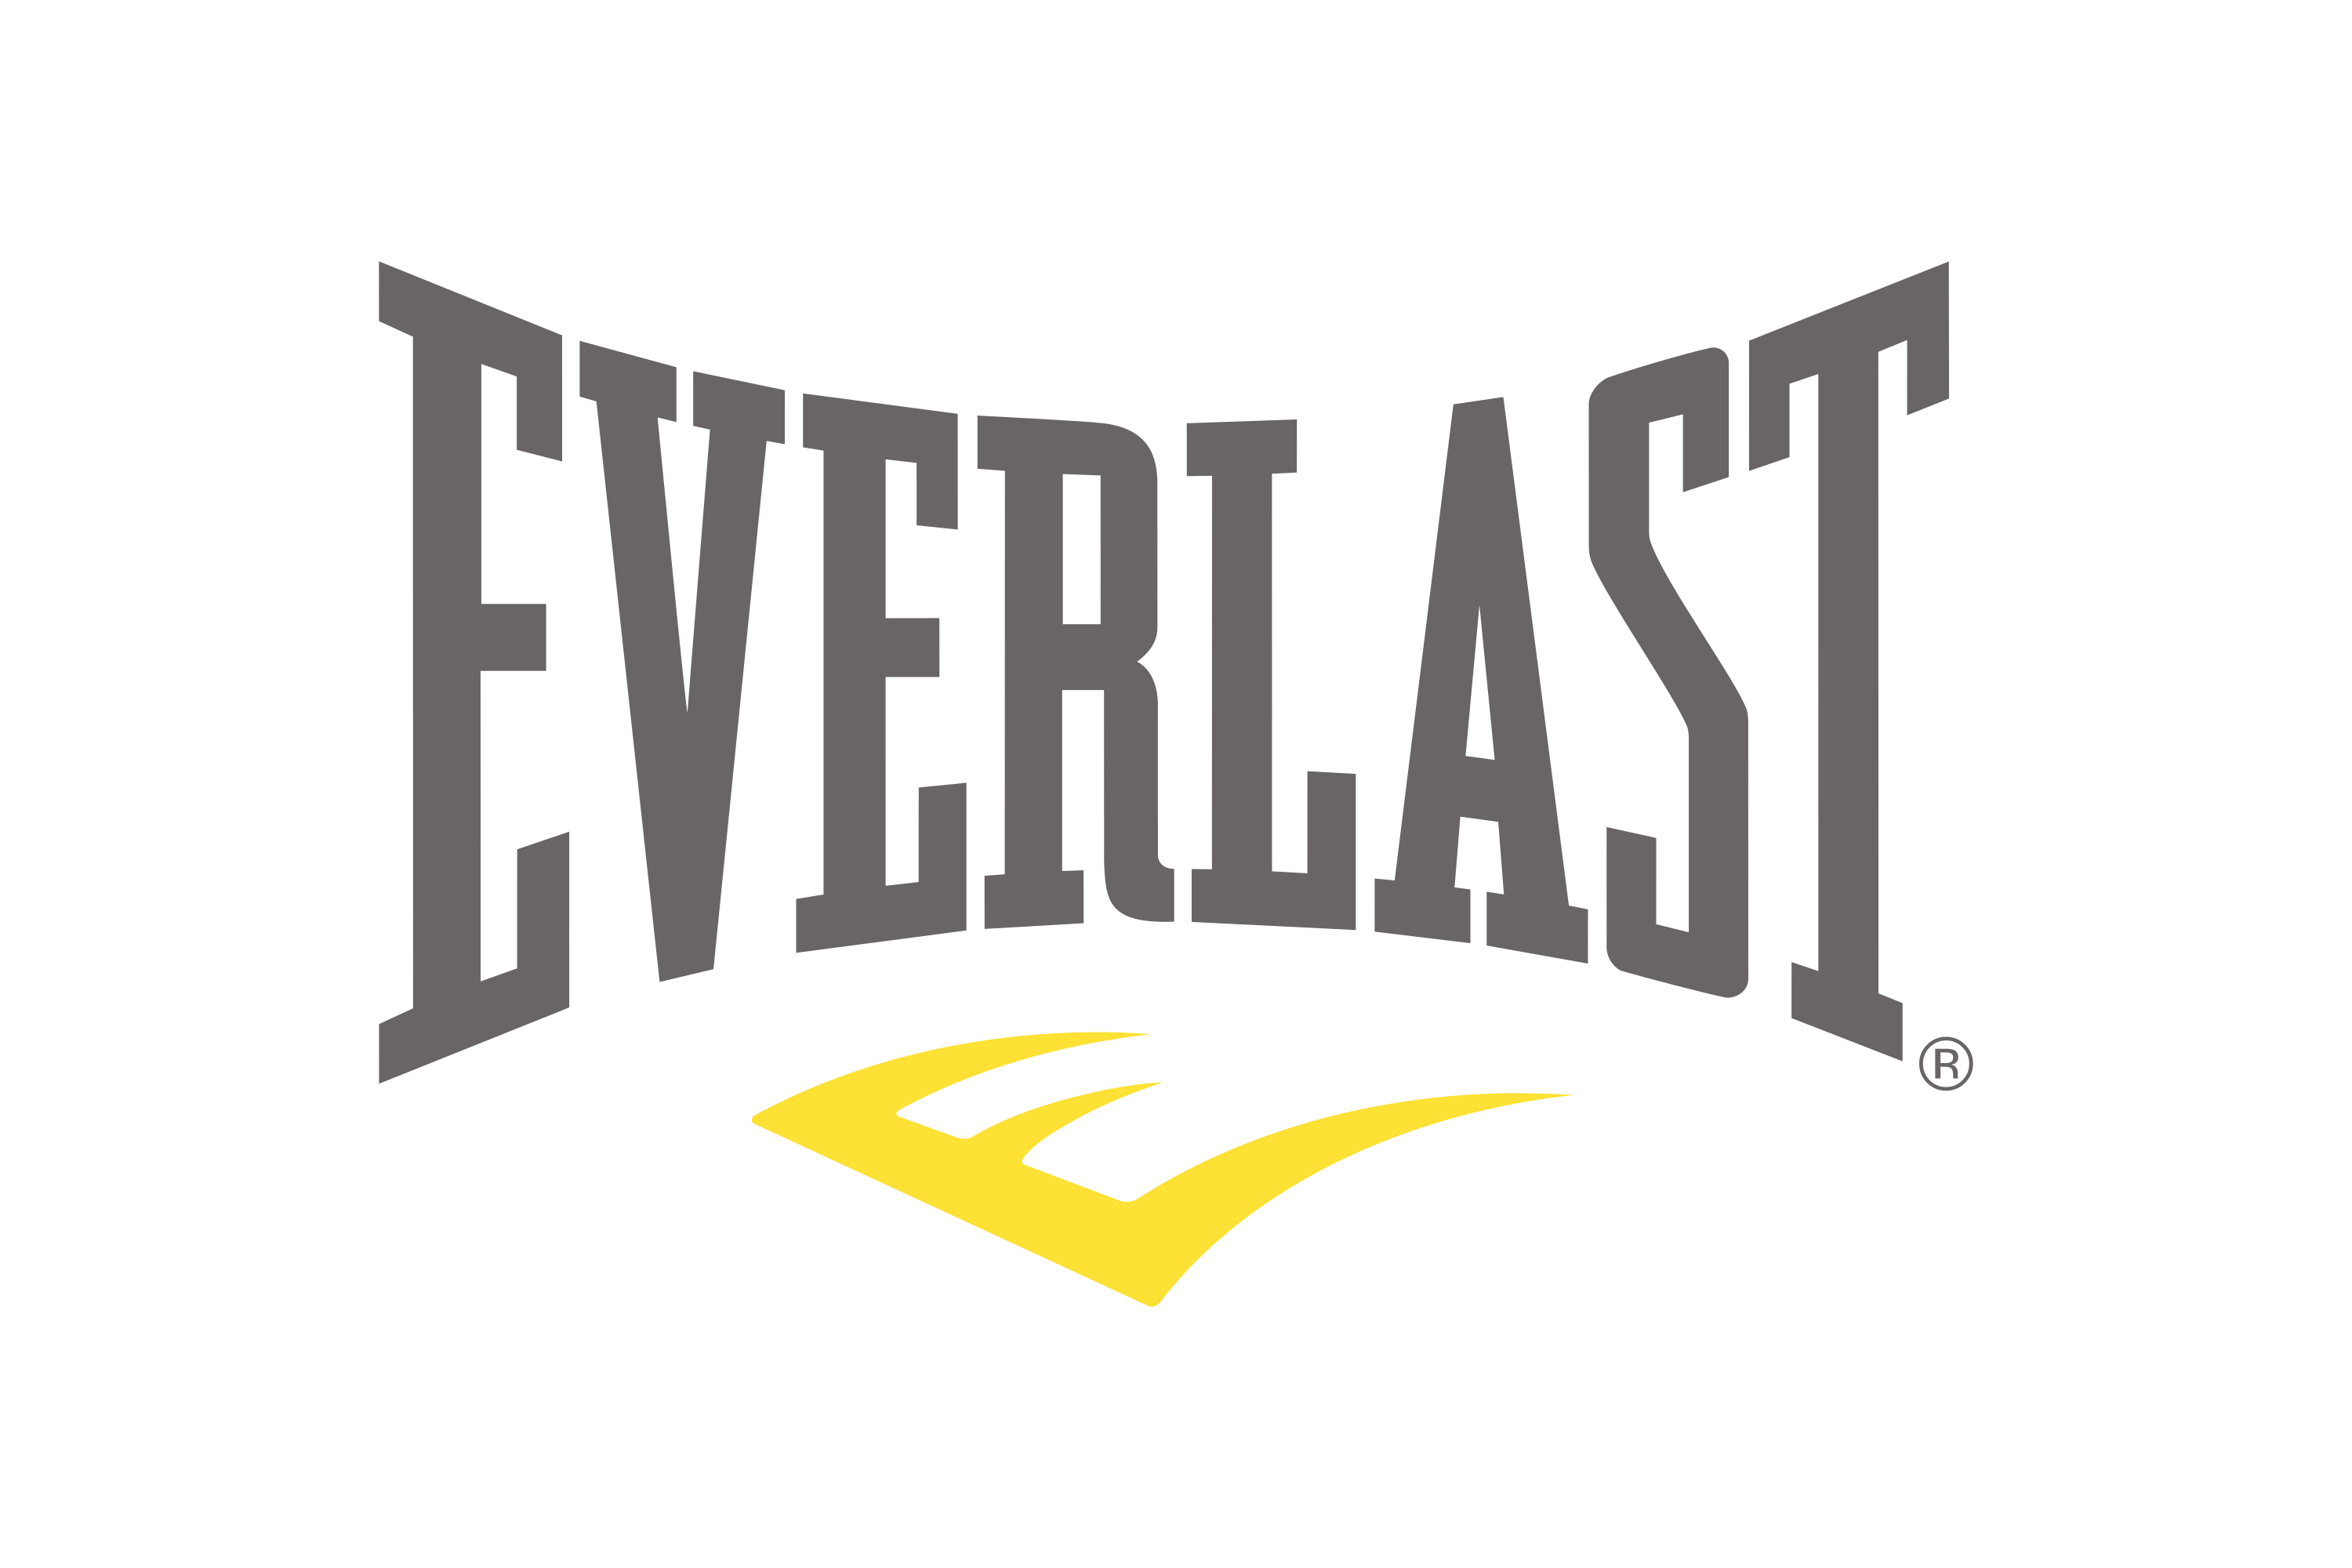 Download Everlast Logo in SVG Vector or PNG File Format 